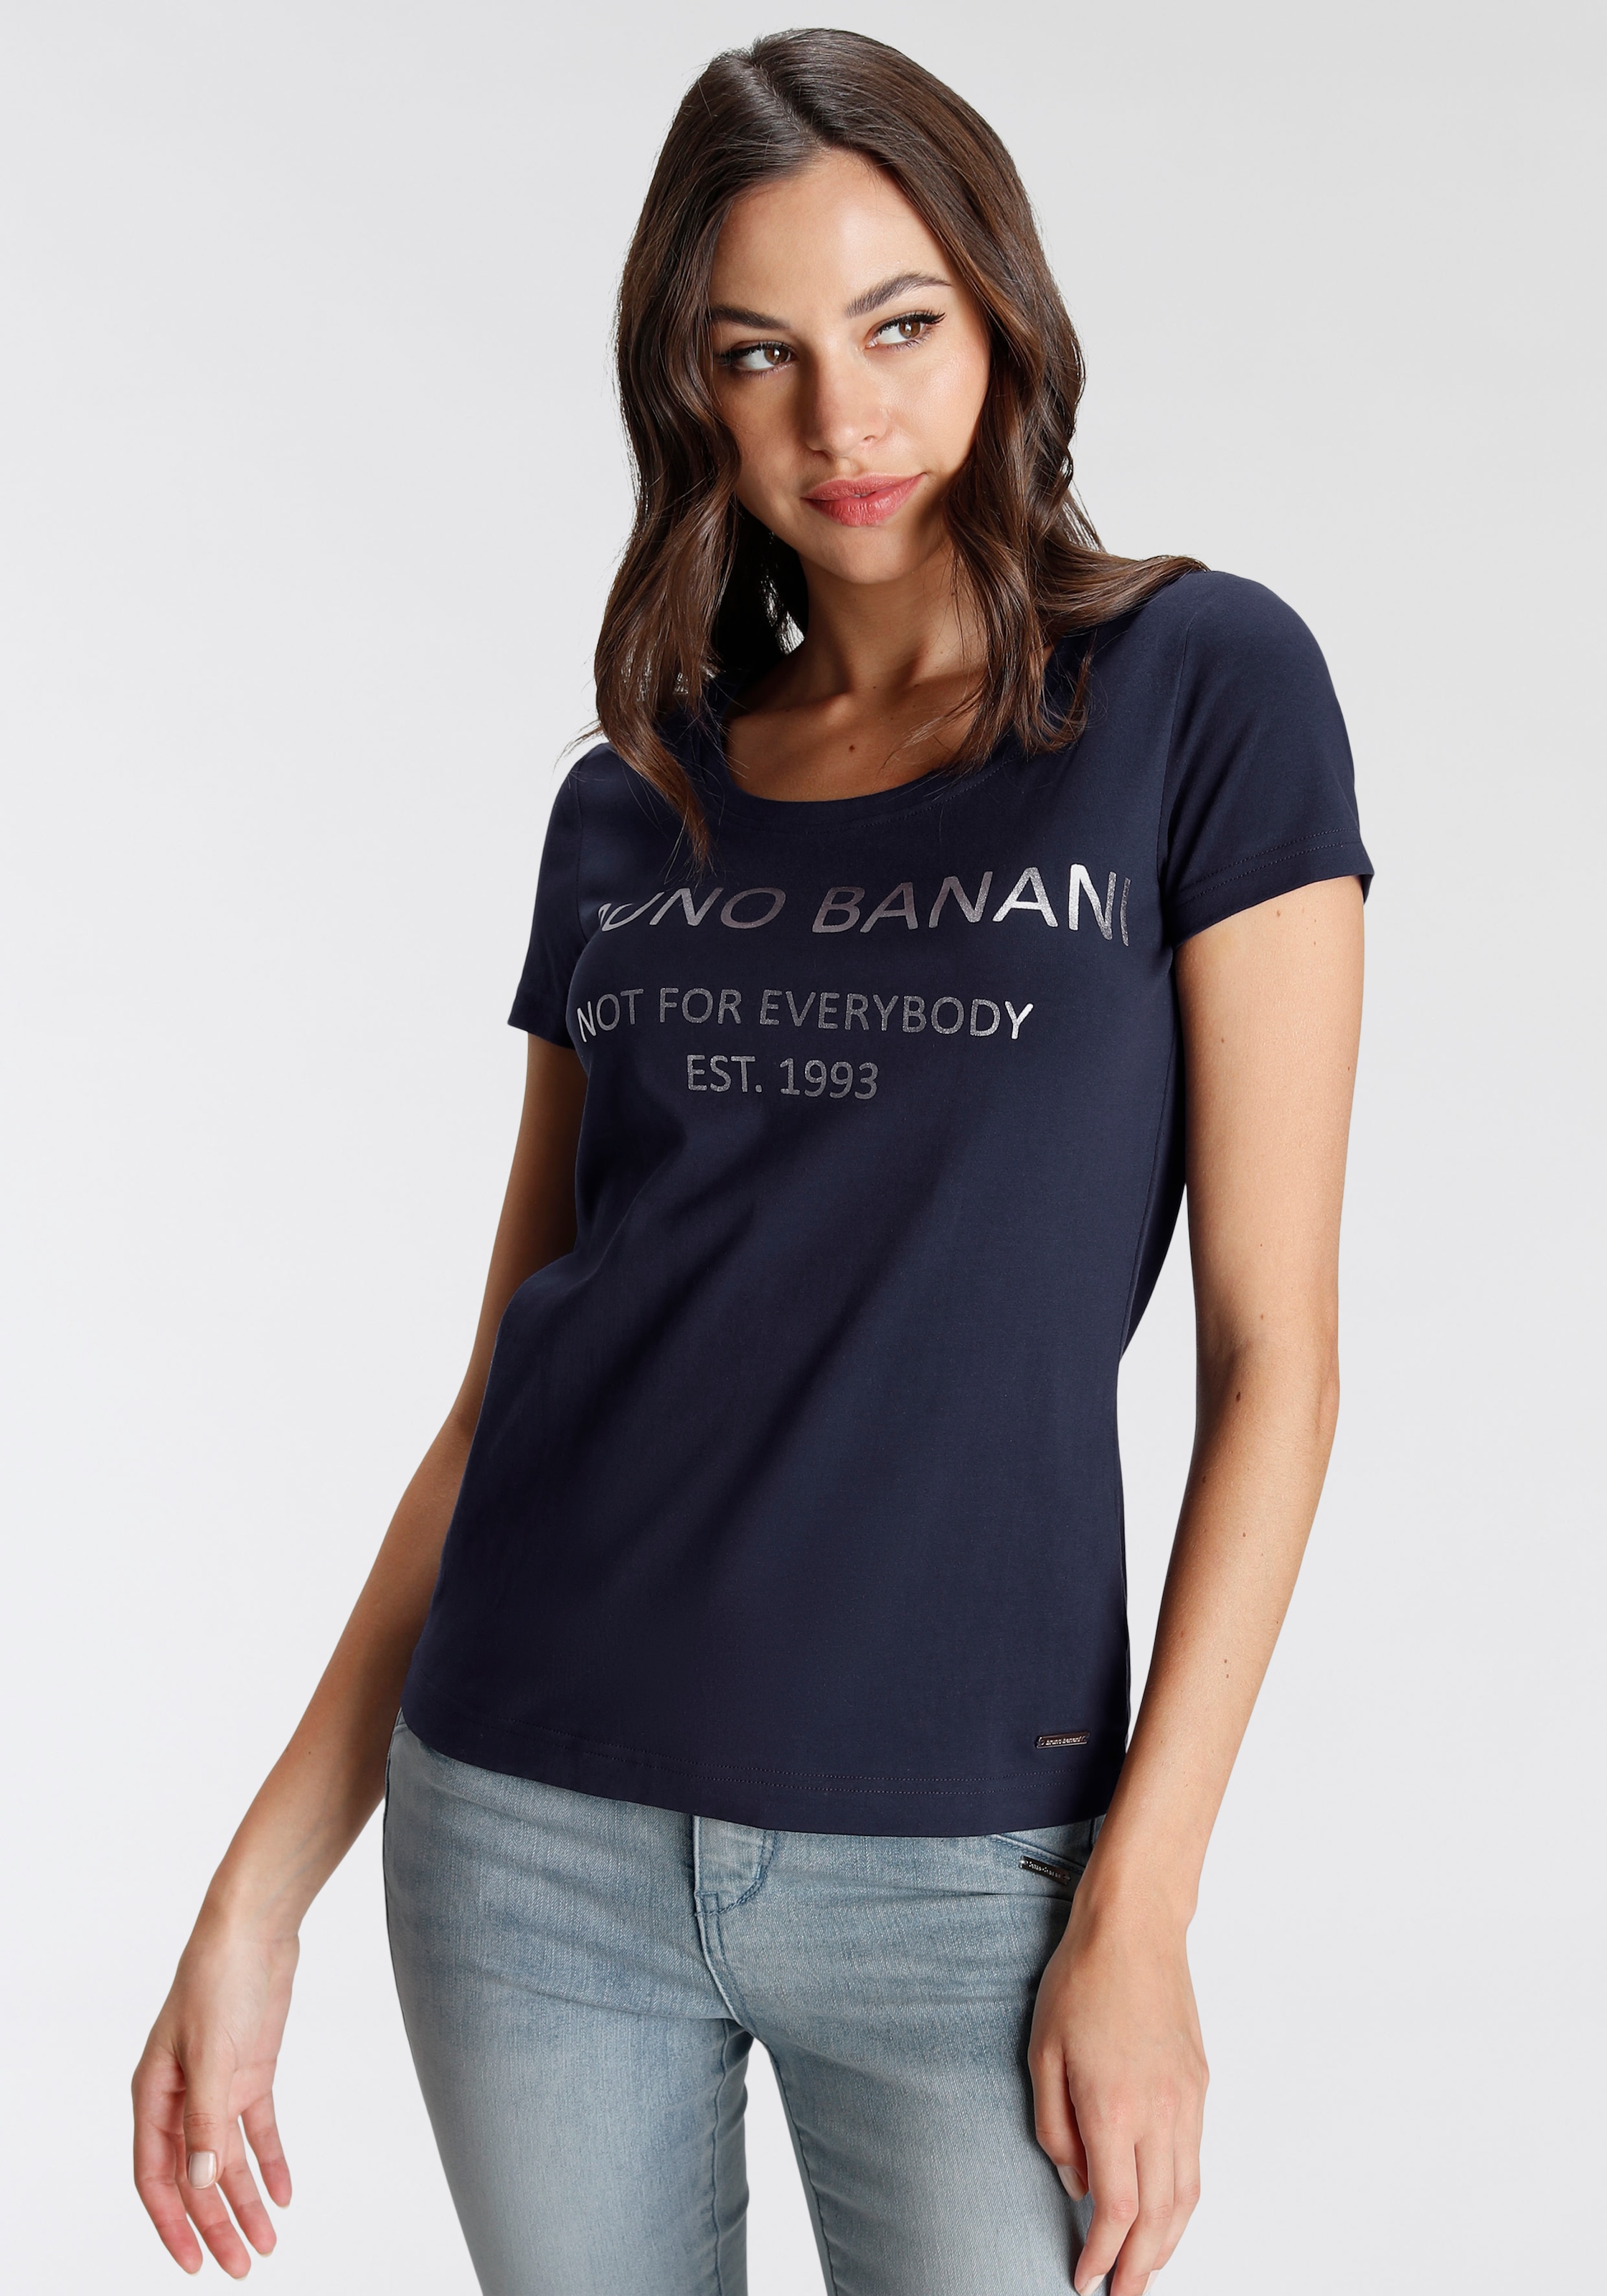 Bruno Banani BAUR goldfarbenem online NEUE T-Shirt, Logodruck | KOLLEKTION bestellen mit